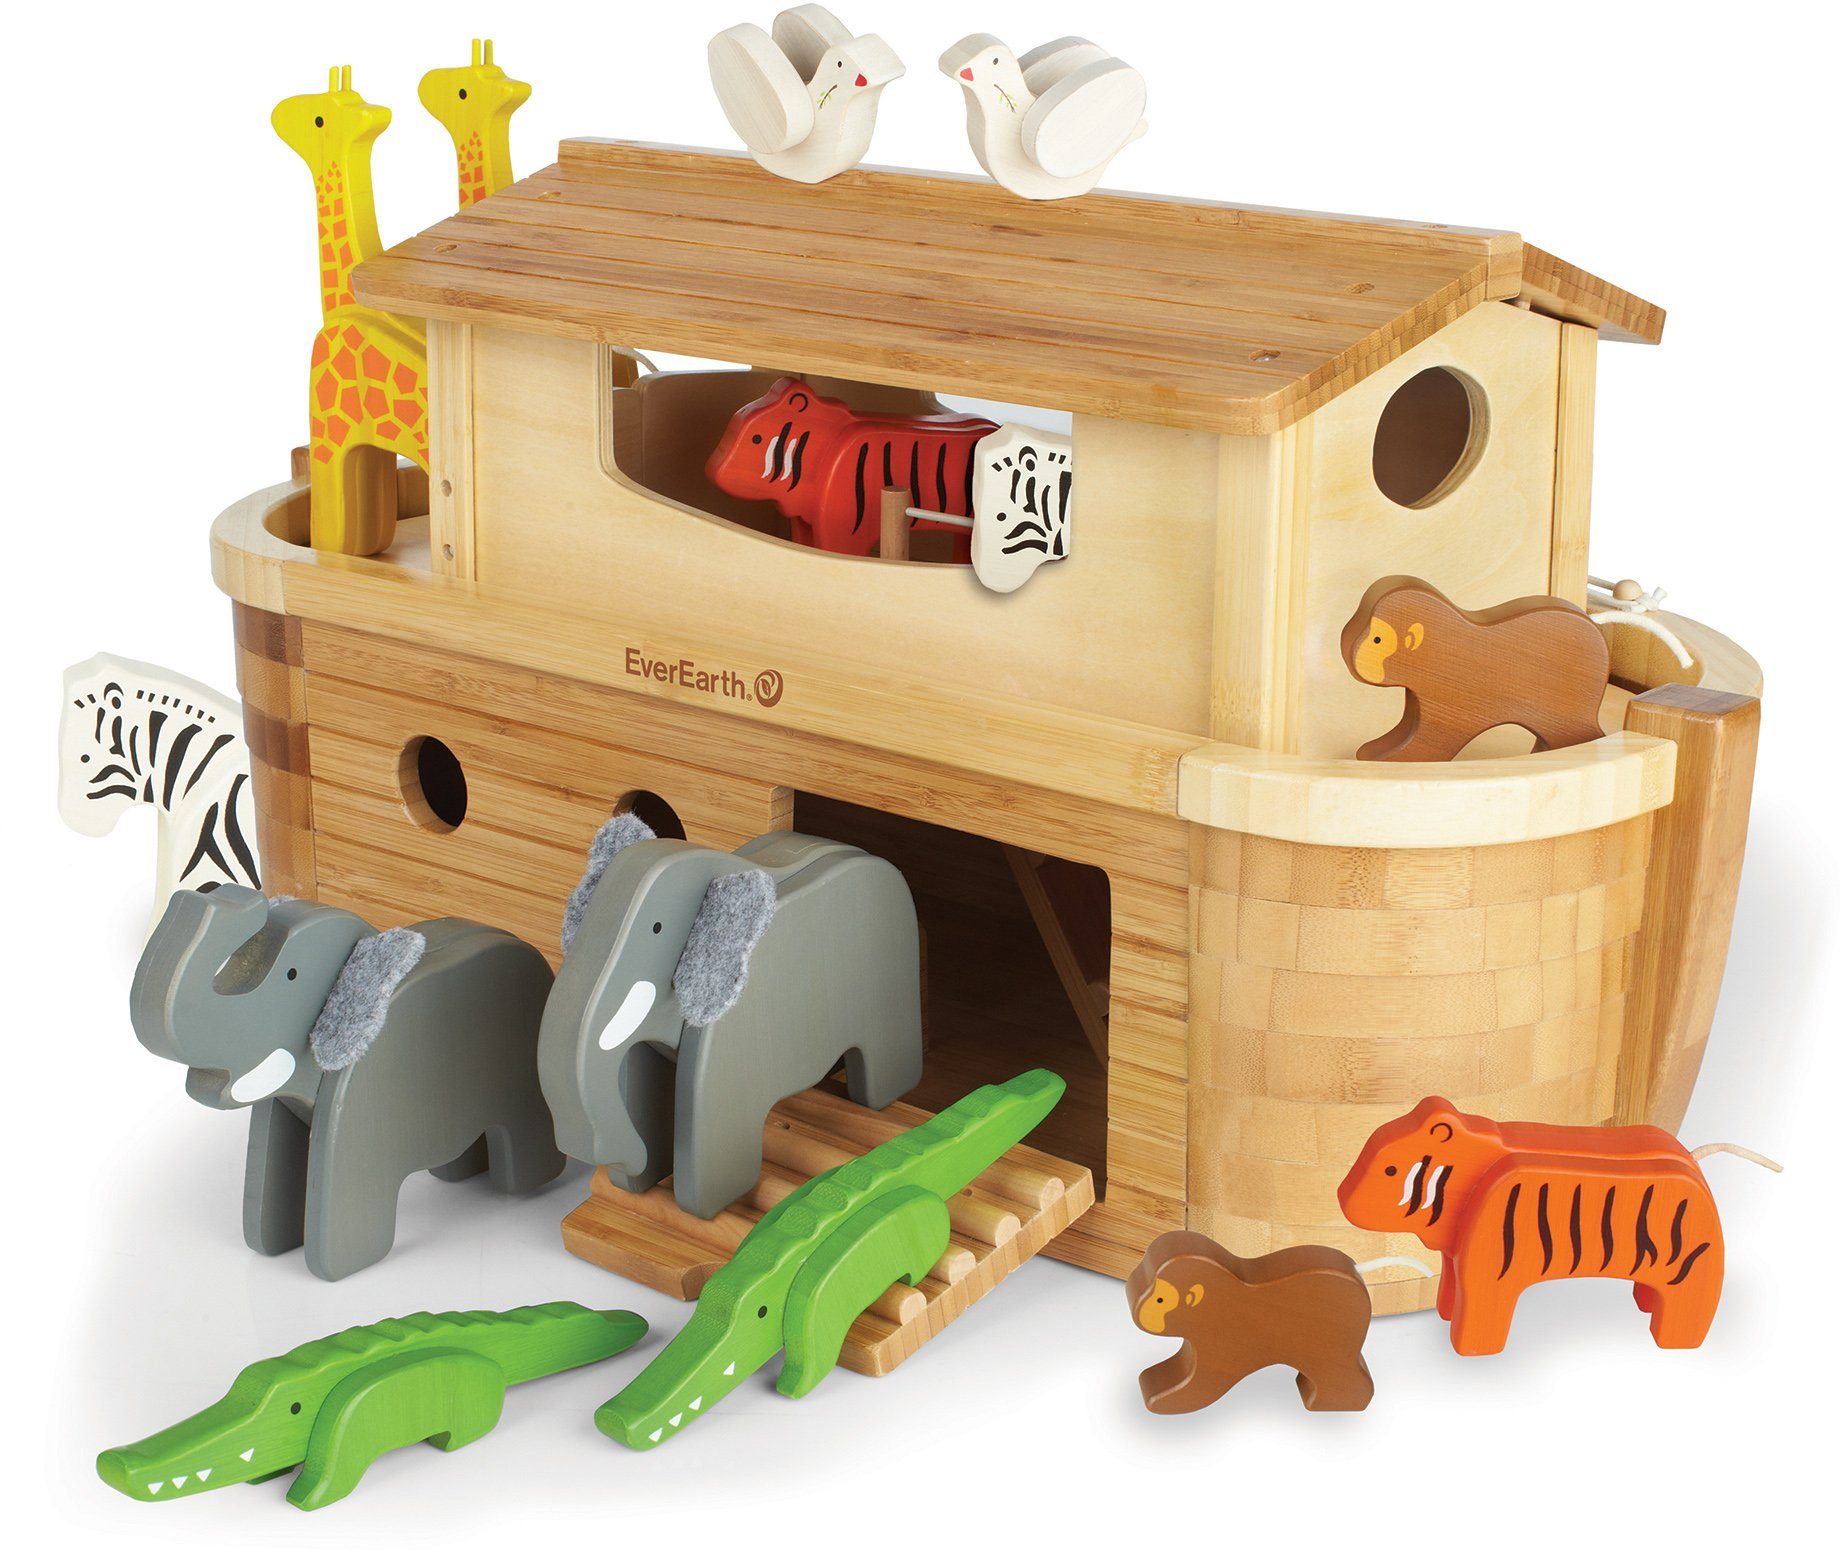 Otto - Everearth EverEarth® houten speelgoed, Grote ark van Noach met 14 dieren